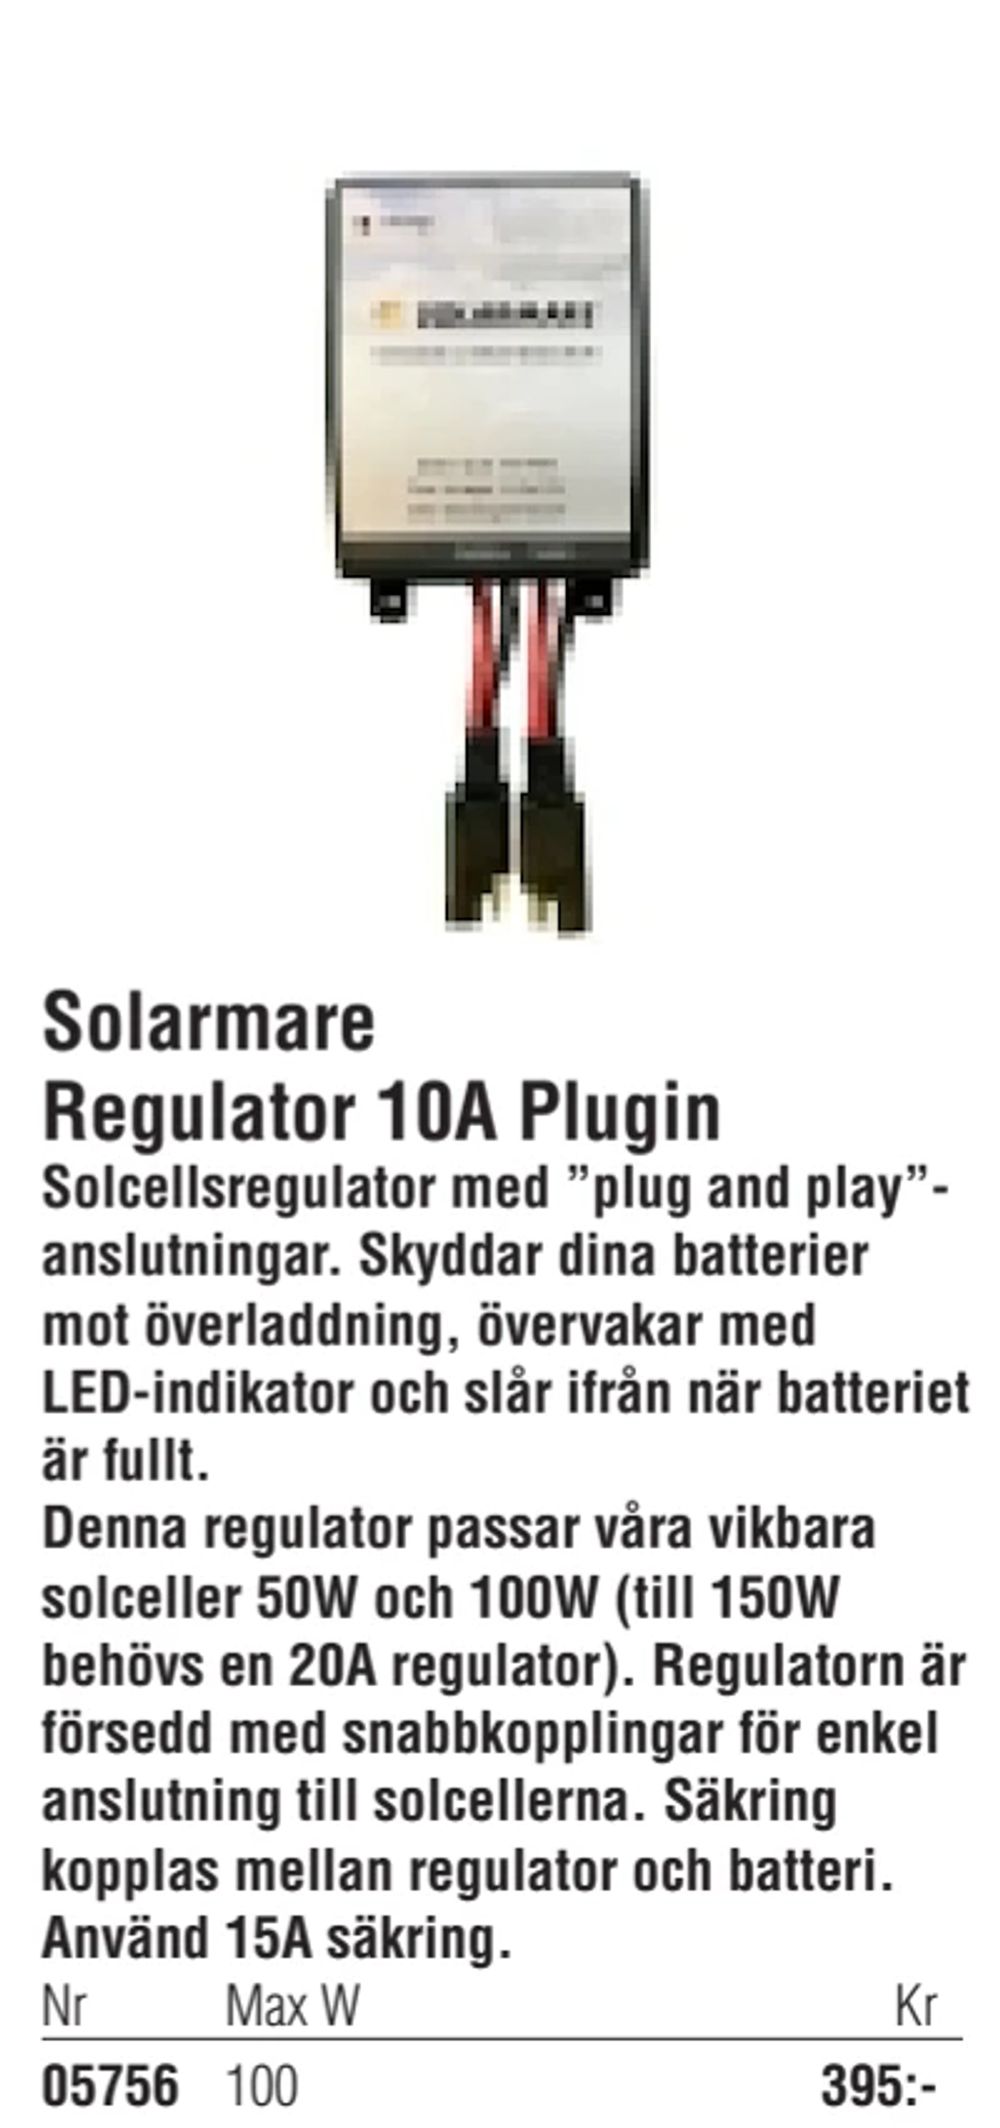 Erbjudanden på Solarmare Regulator 10A Plugin från Erlandsons Brygga för 395 kr